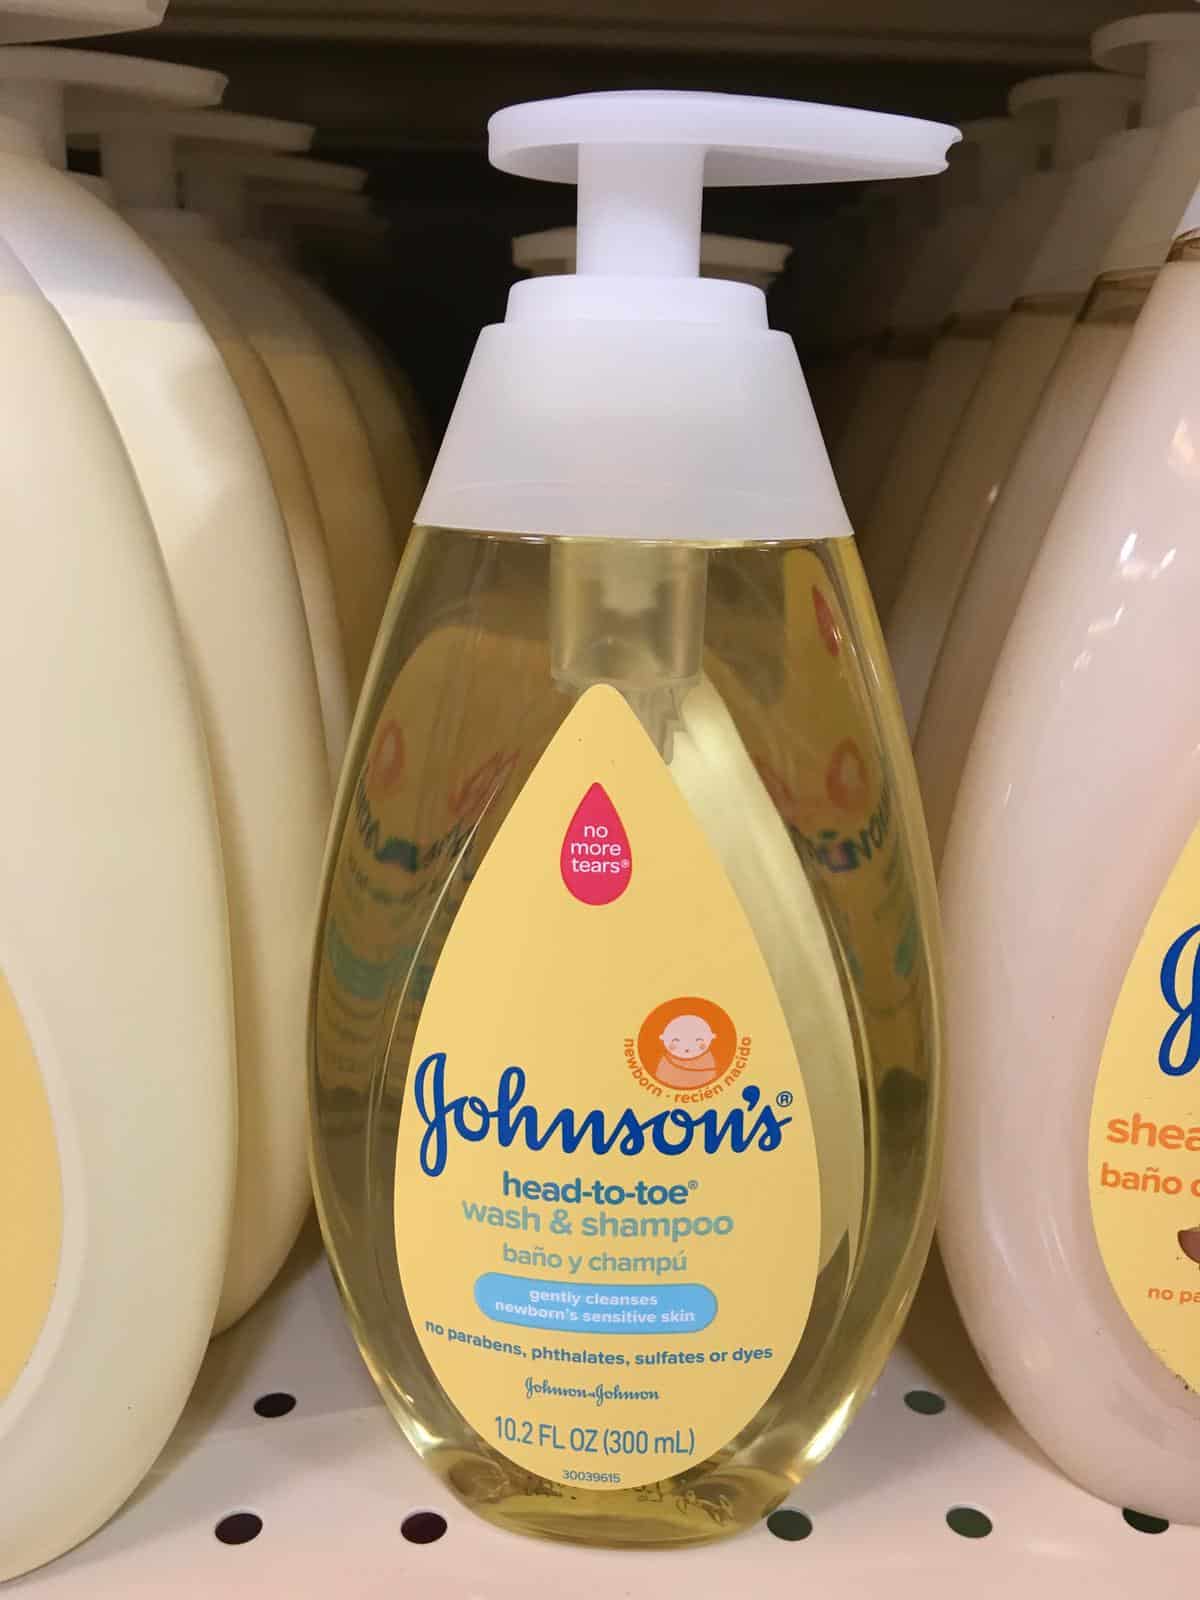 johnson's head to toe wash & shampoo